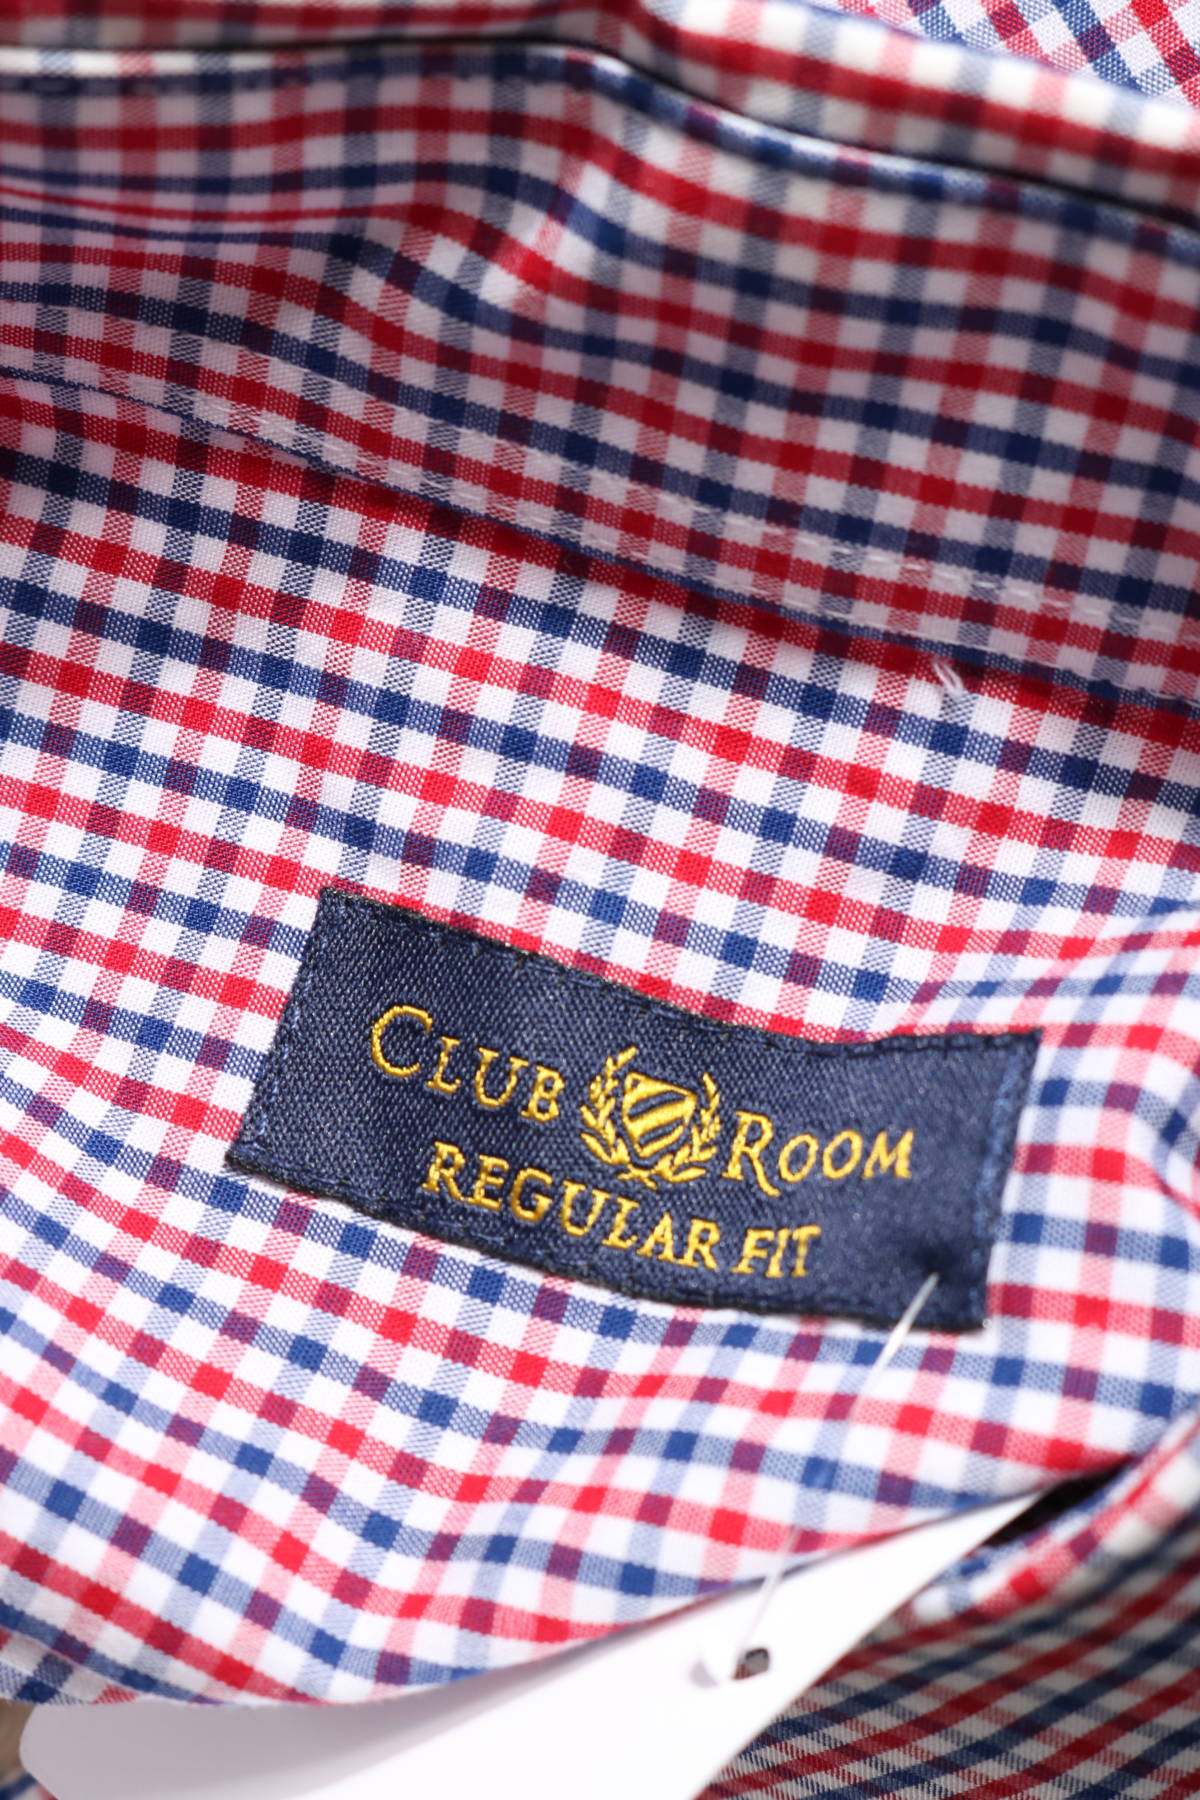 Риза CLUB ROOM3